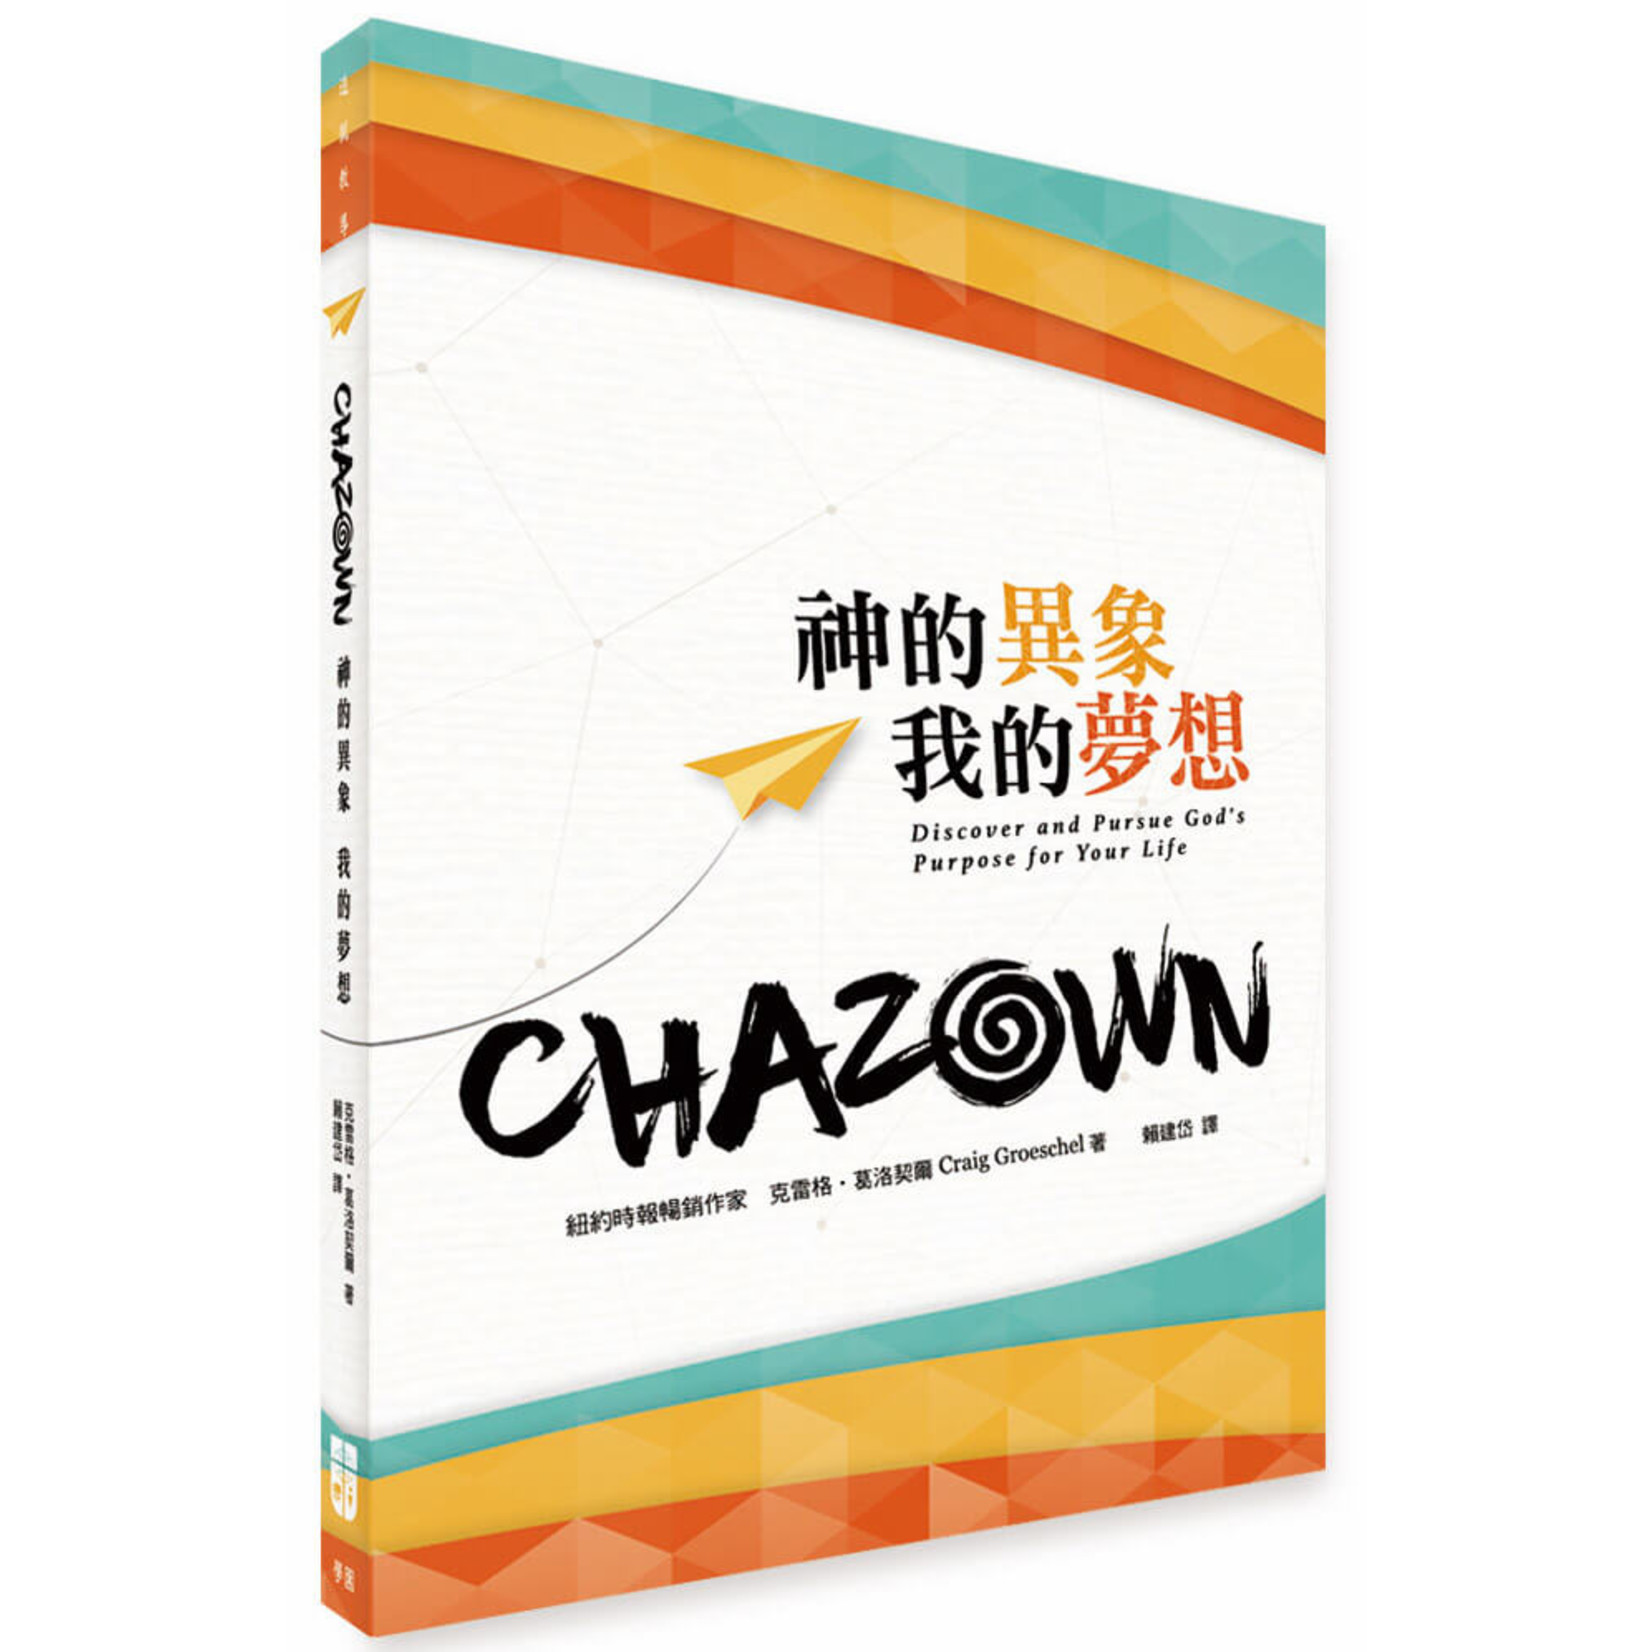 中國學園傳道會 Taiwan Campus Crusade for Christ CHAZOWN：神的異象我的夢想 (Chazown: Discover and Pursue God's Purpose for Your Life)